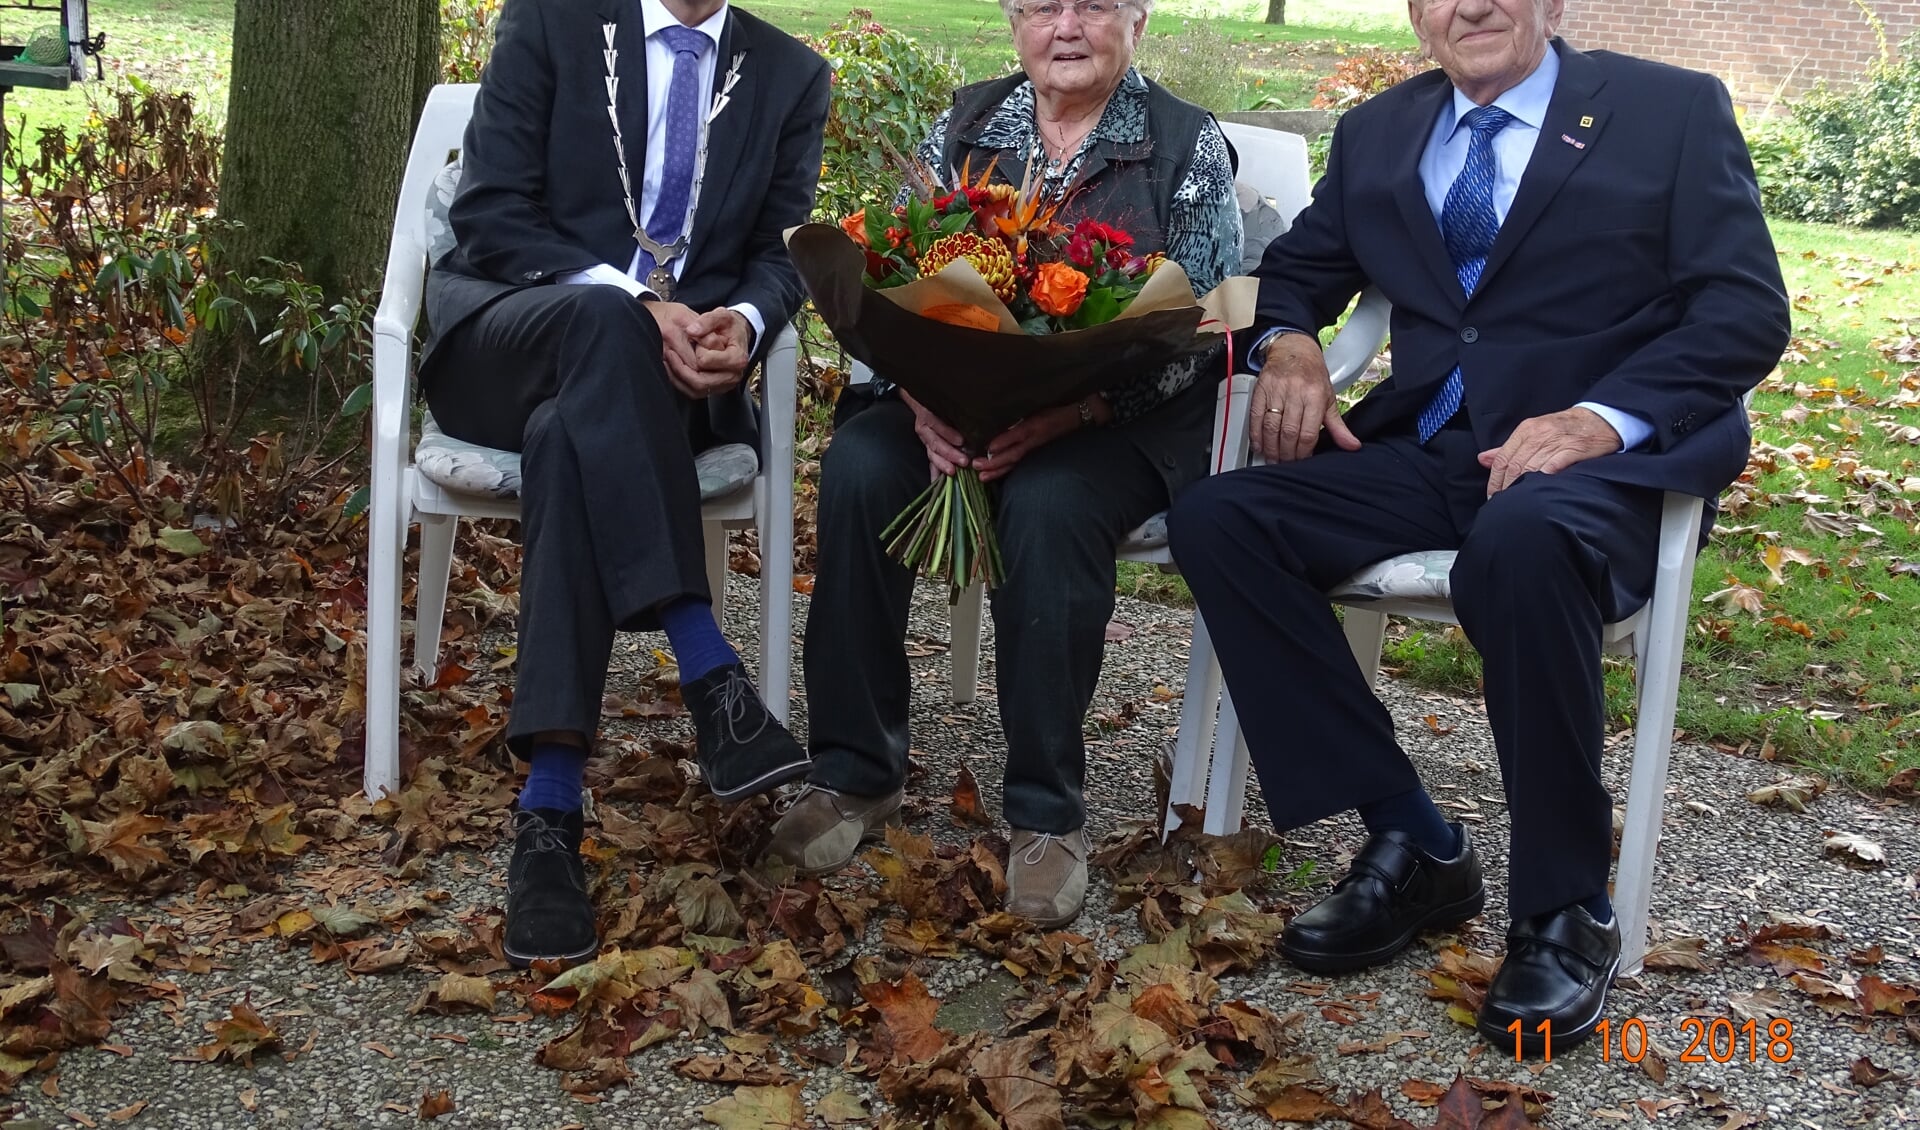 Burgemeester Joost van Oostrum van Berkelland kwam het diamanten echtpaar feliciteren. Foto: PR